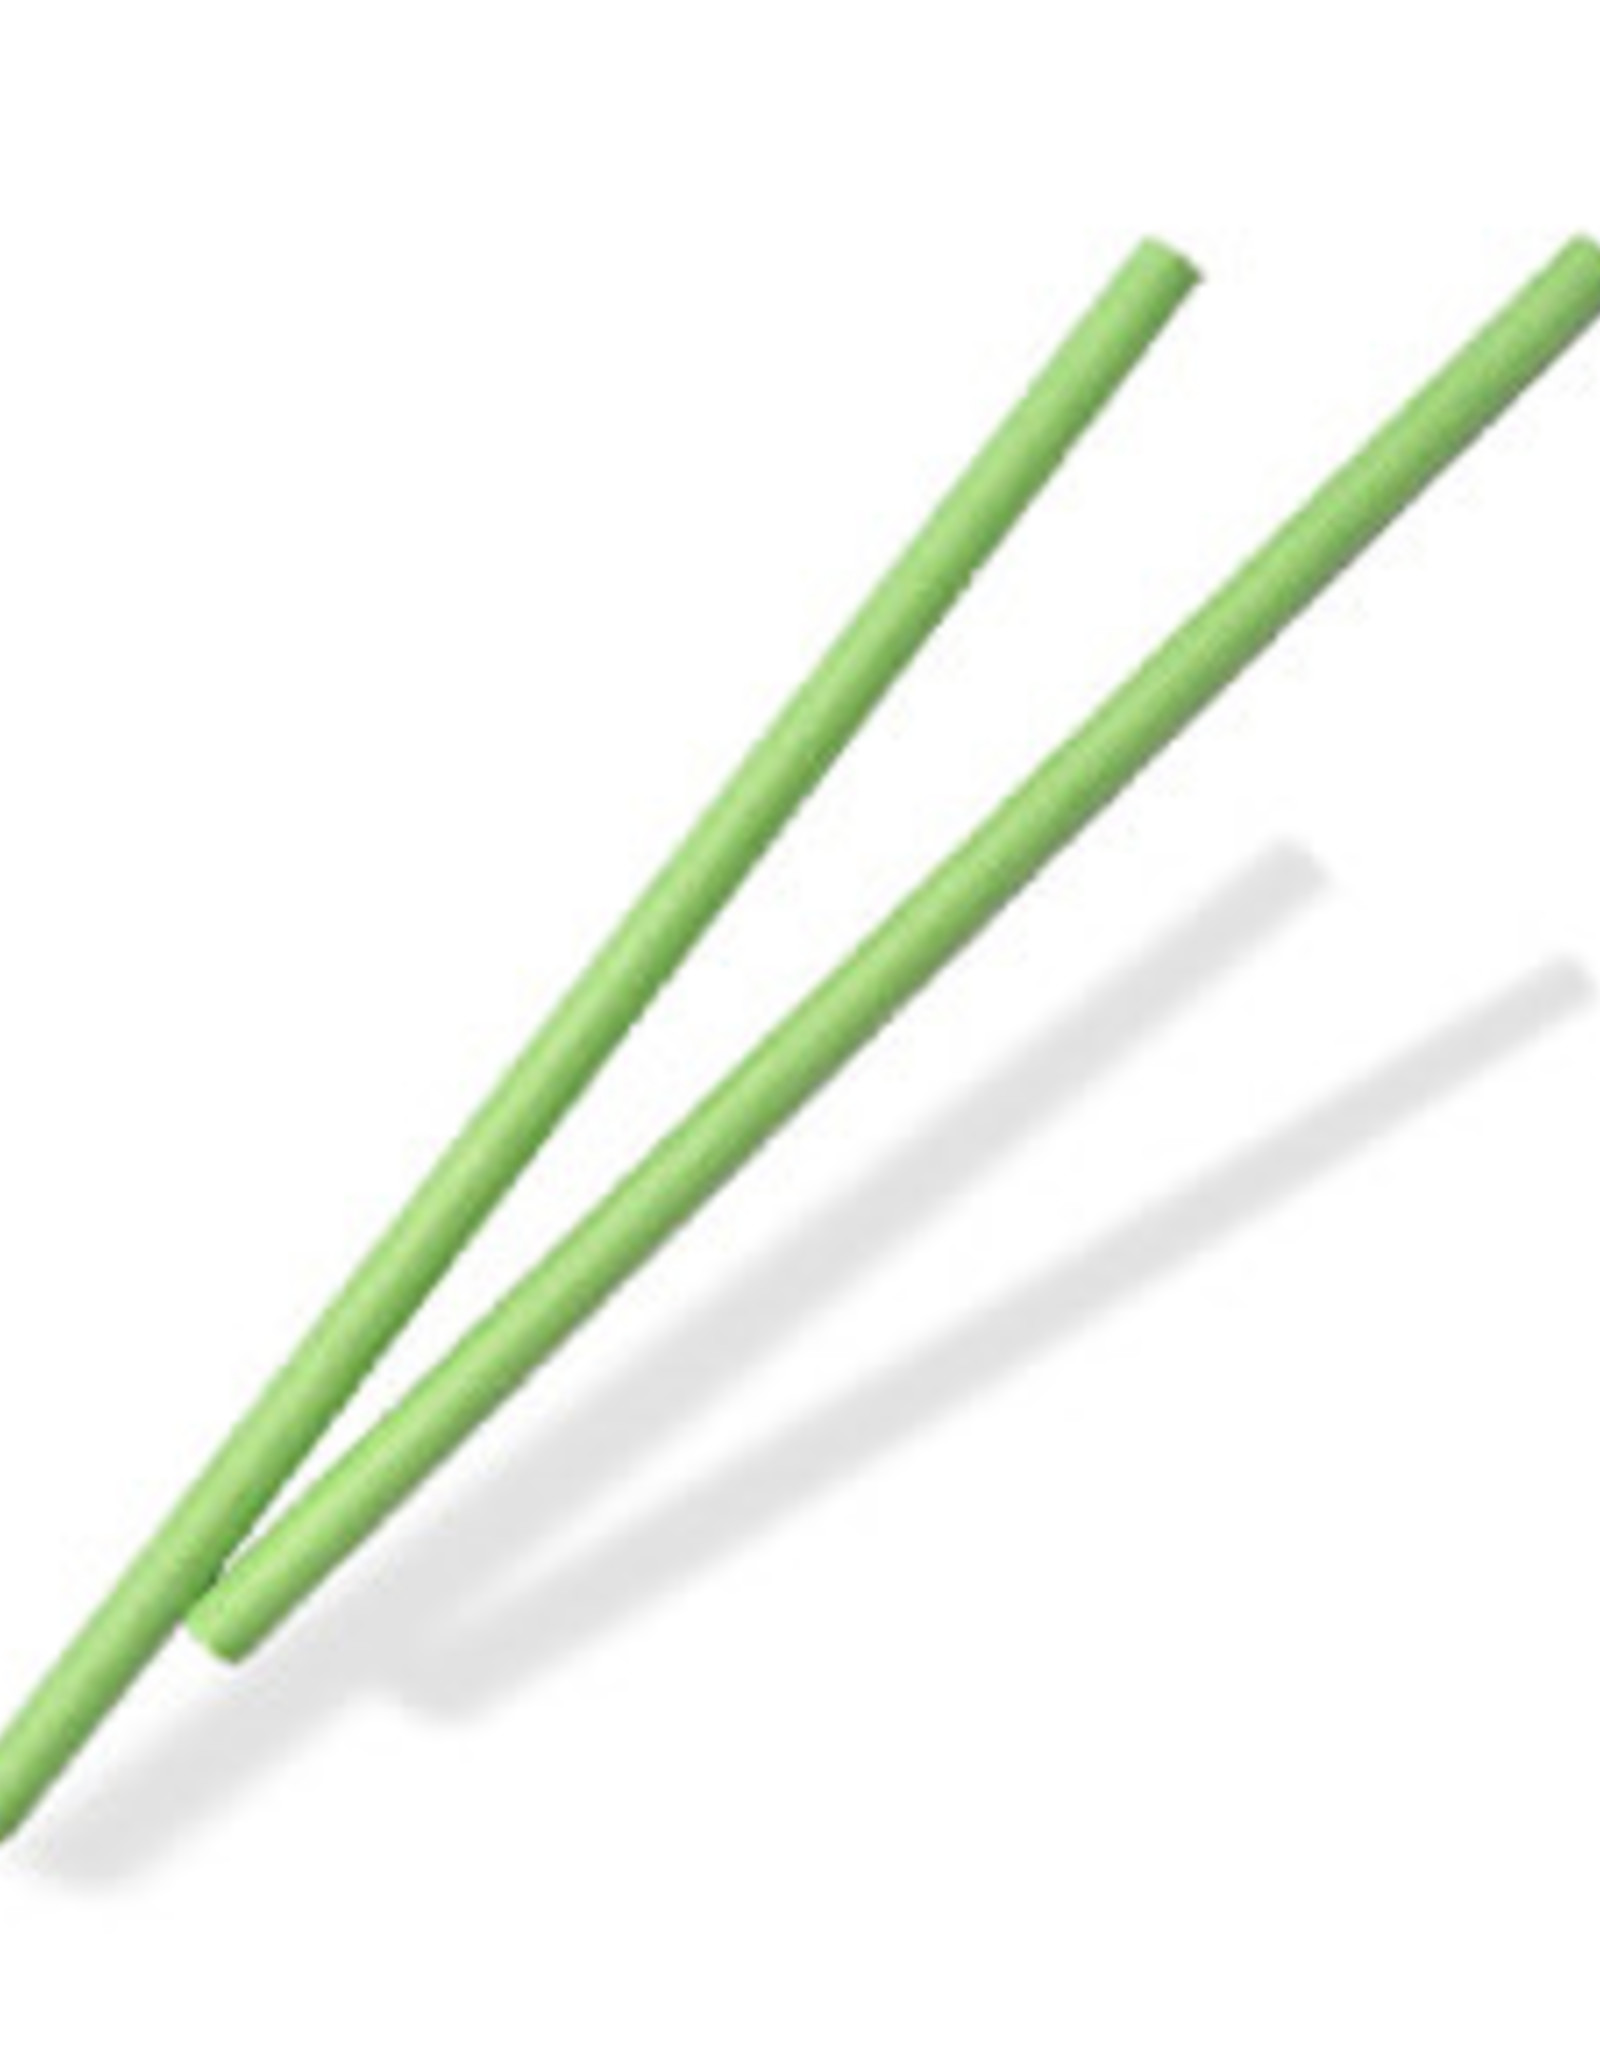 Green Sucker Sticks (4") - 25ct